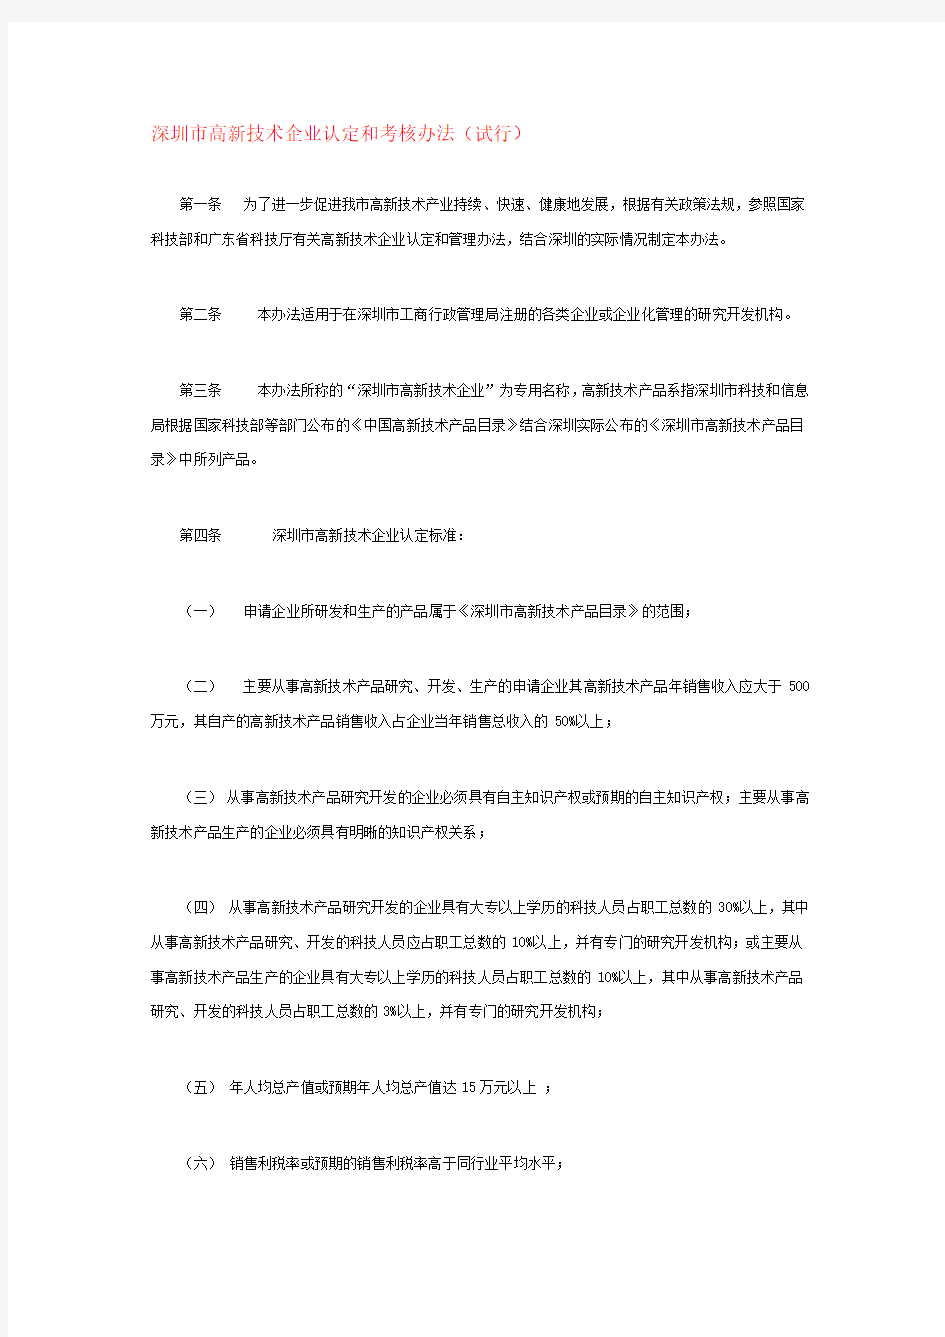 深圳市高新技术企业认定及考核办法